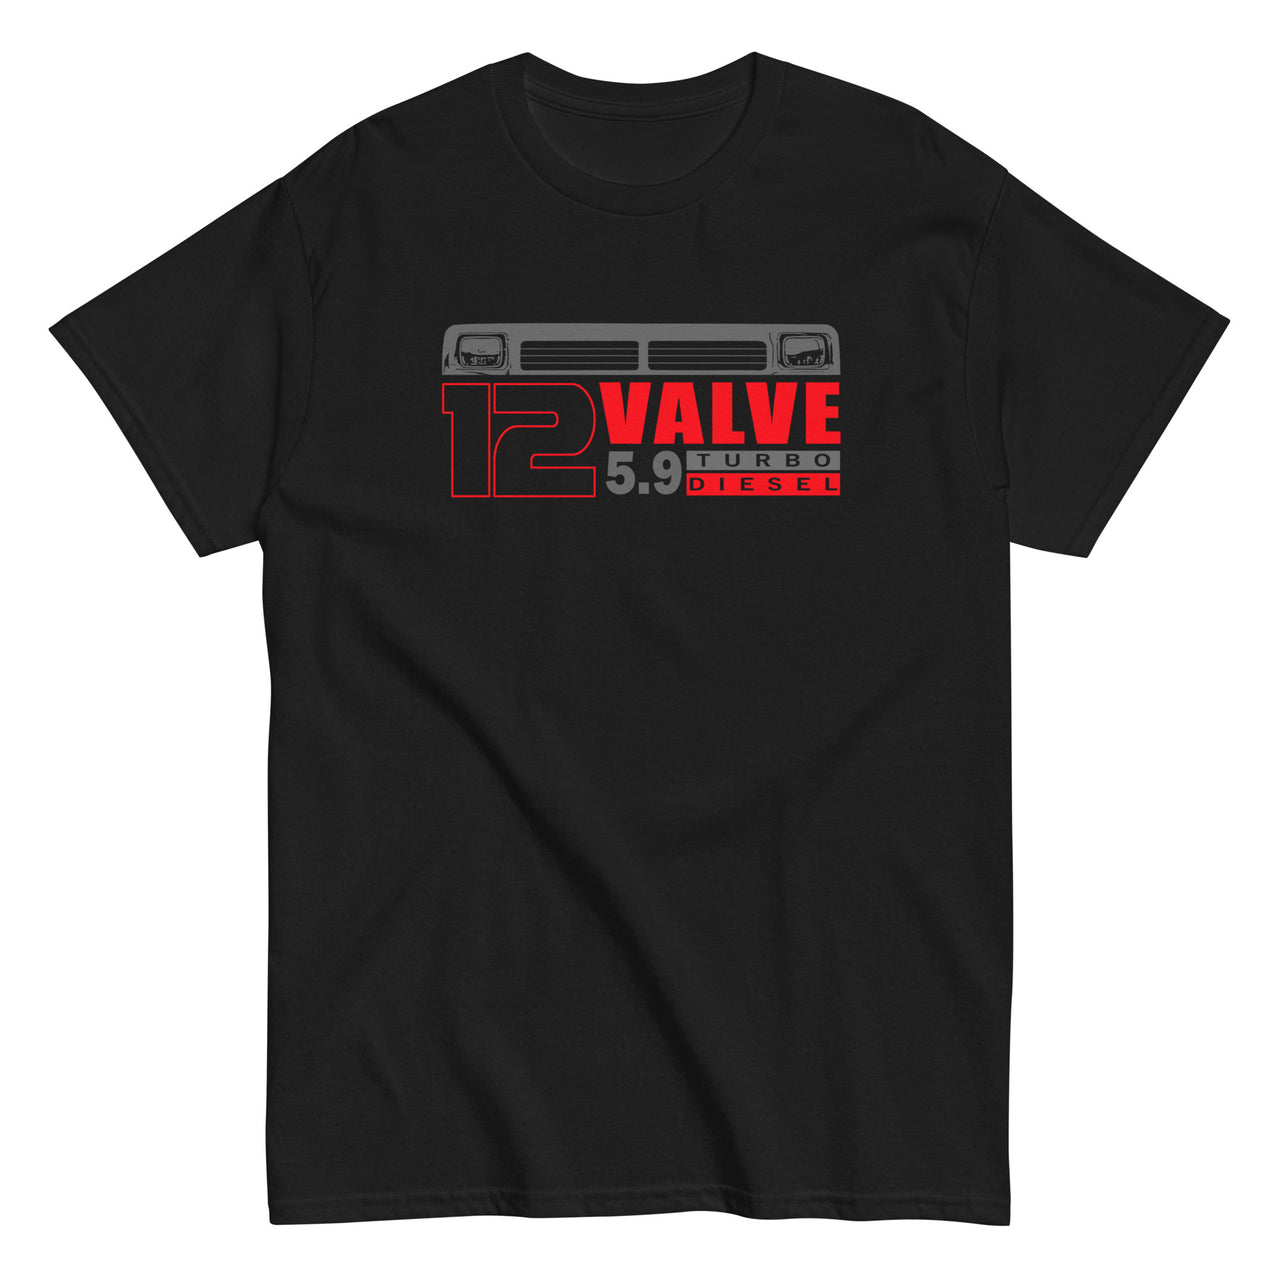 First Gen 12 Valve Diesel Truck T-Shirt in black